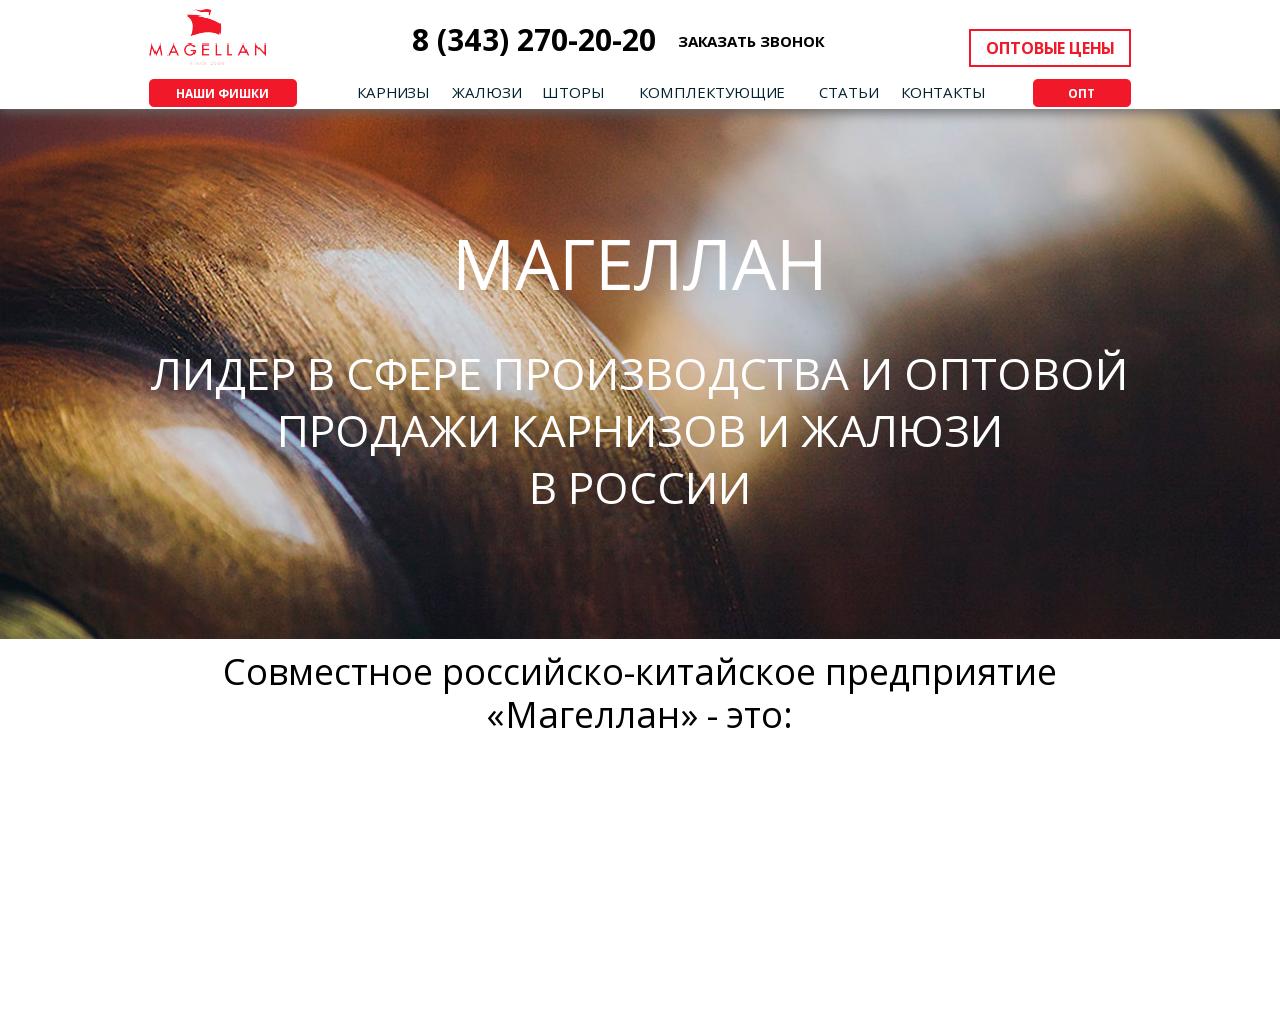 Изображение сайта tk-magellan.ru в разрешении 1280x1024